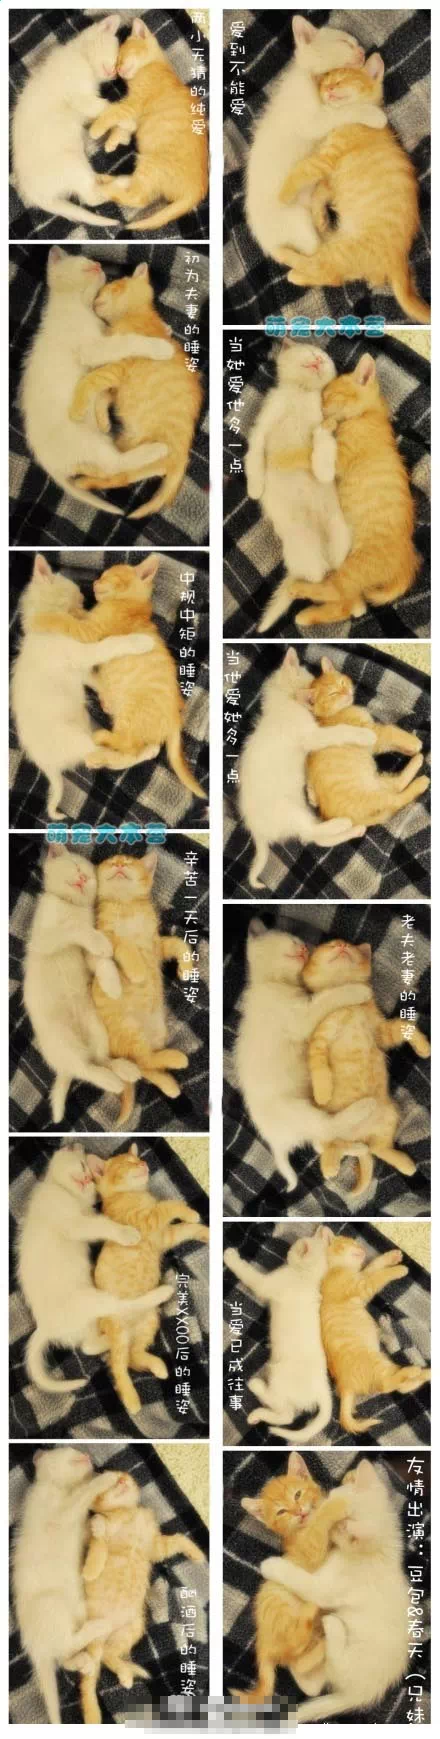 猫咪演绎不同爱情阶段的睡姿